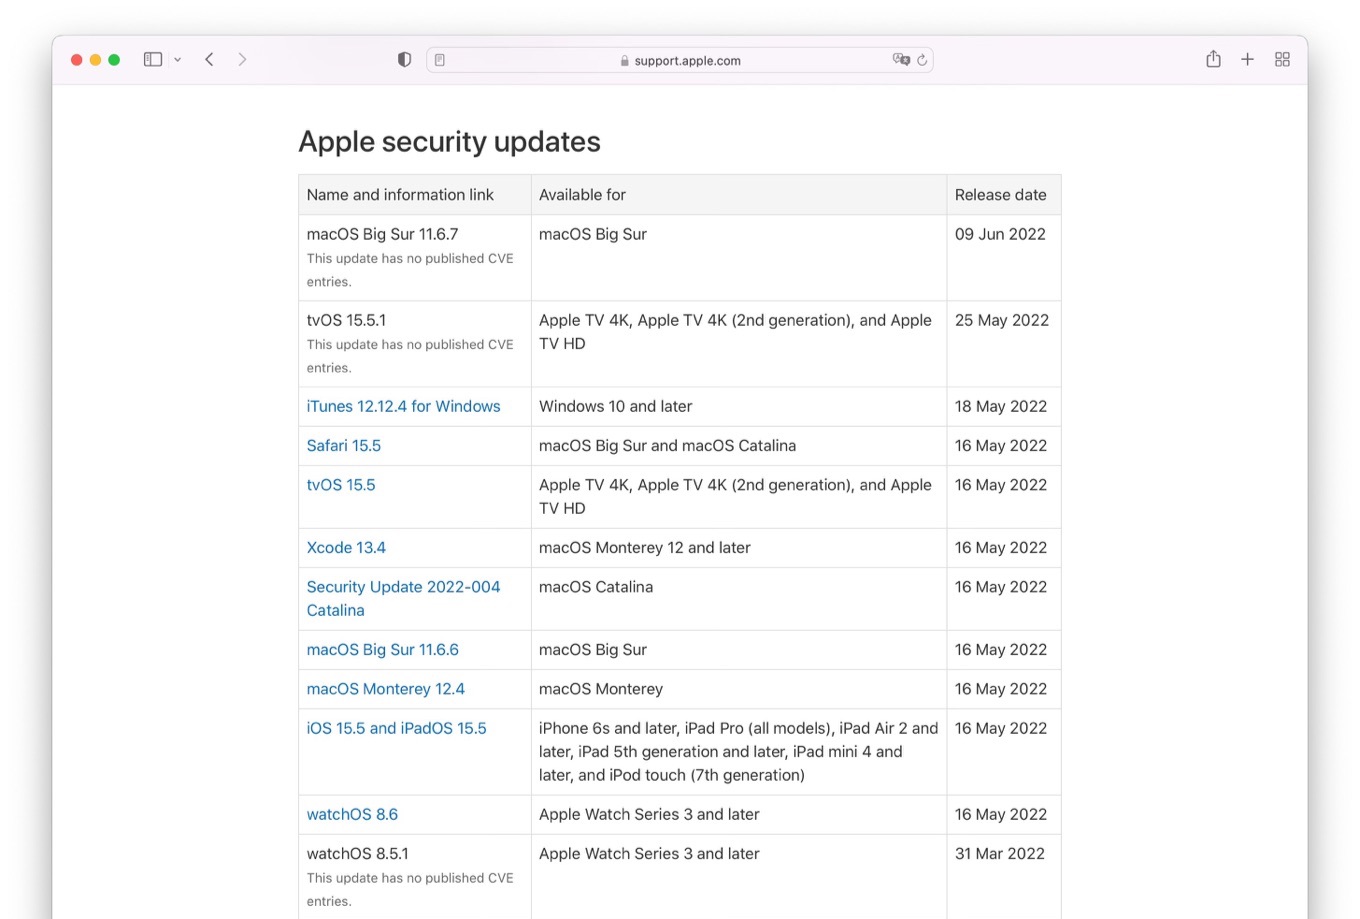 macOS Big Sur 11.6.7 This update has no published CVE entries.